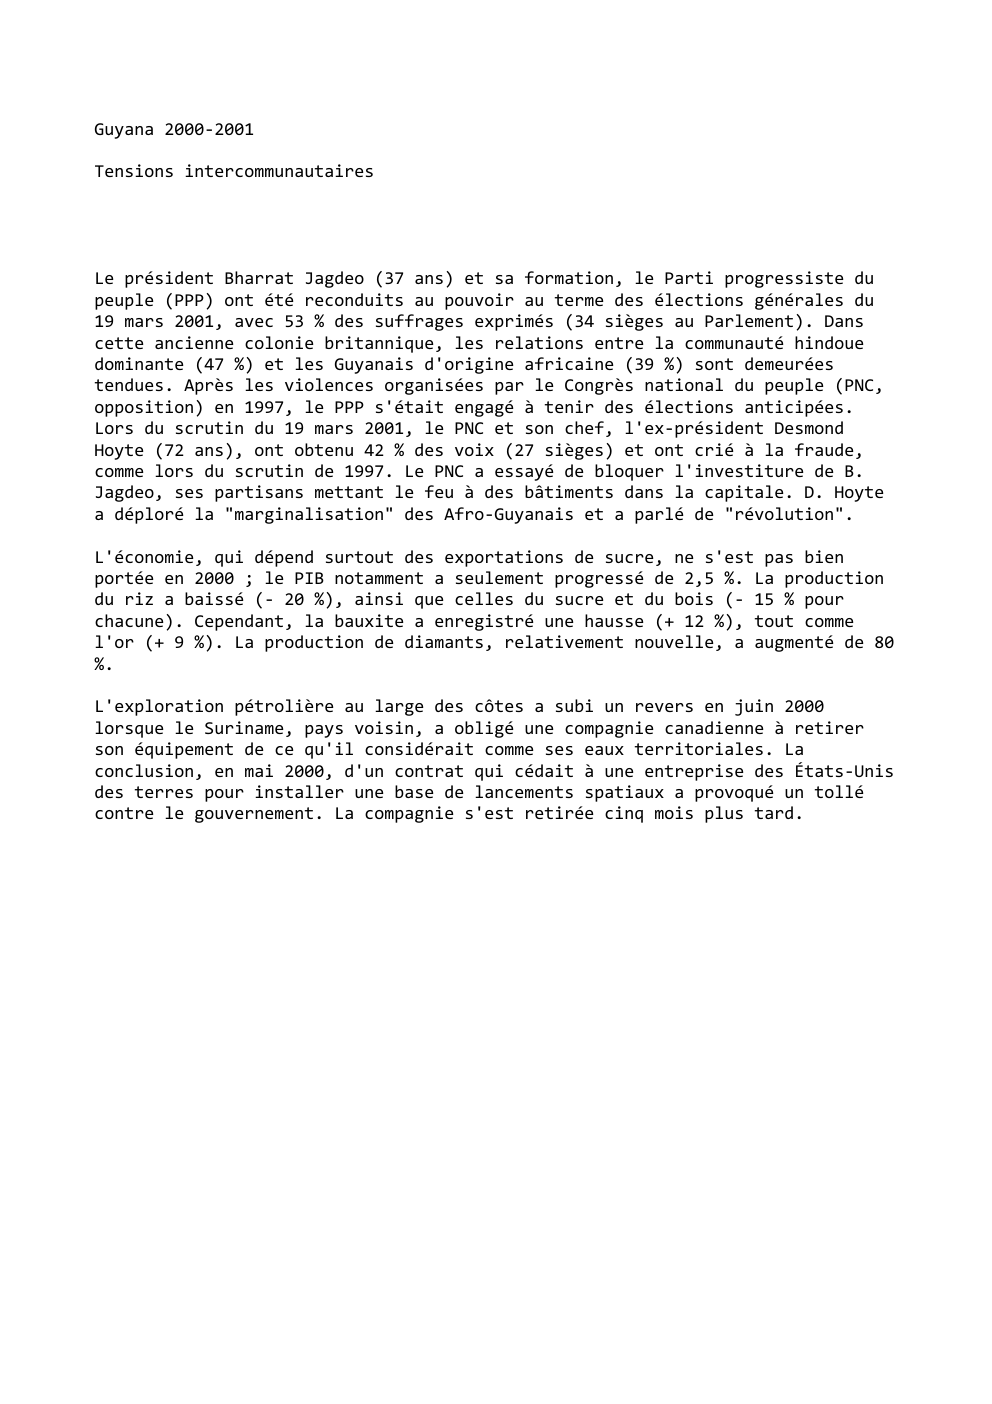 Prévisualisation du document Guyana 2000-2001
Tensions intercommunautaires

Le président Bharrat Jagdeo (37 ans) et sa formation, le Parti progressiste du
peuple (PPP) ont...